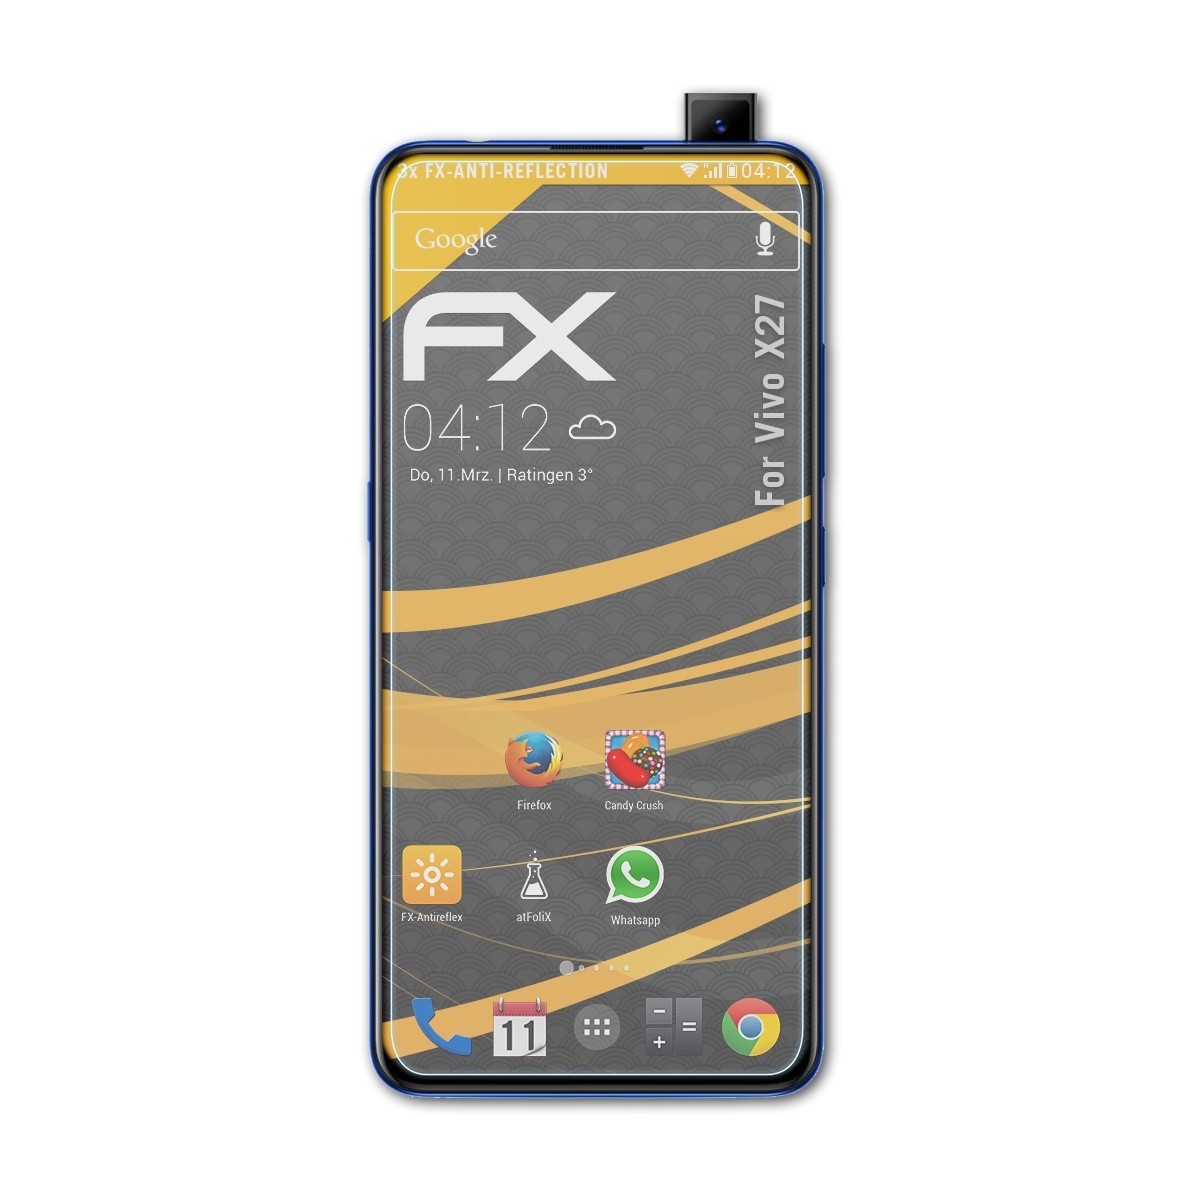 ATFOLIX 3x FX-Antireflex Displayschutz(für X27) Vivo